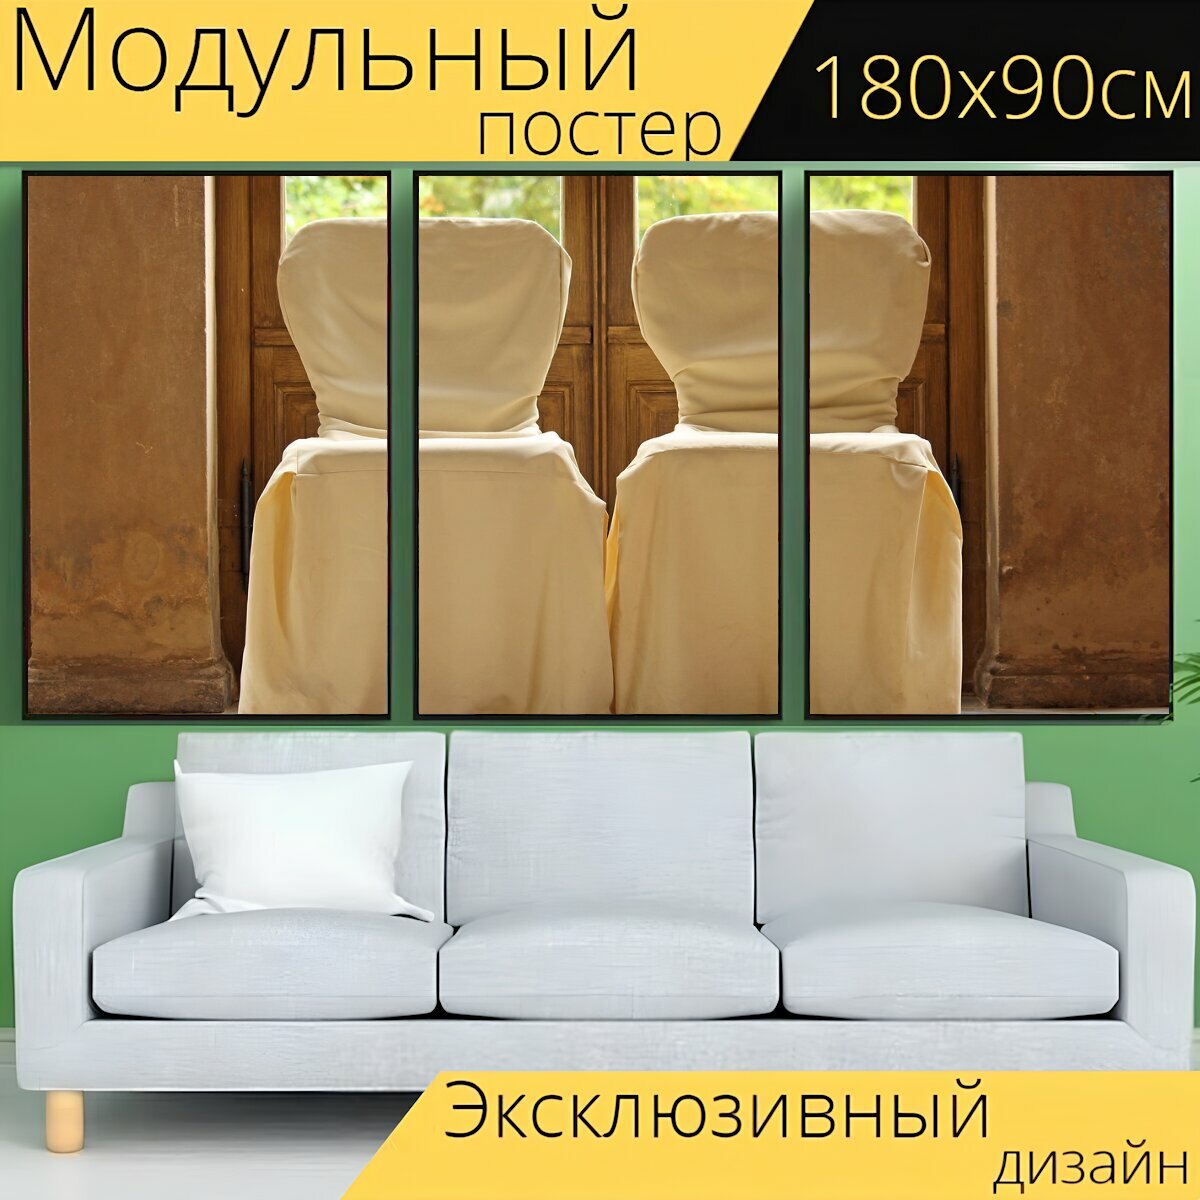 Модульный постер "Стул чехлы, стулья, замок бельведер" 180 x 90 см. для интерьера